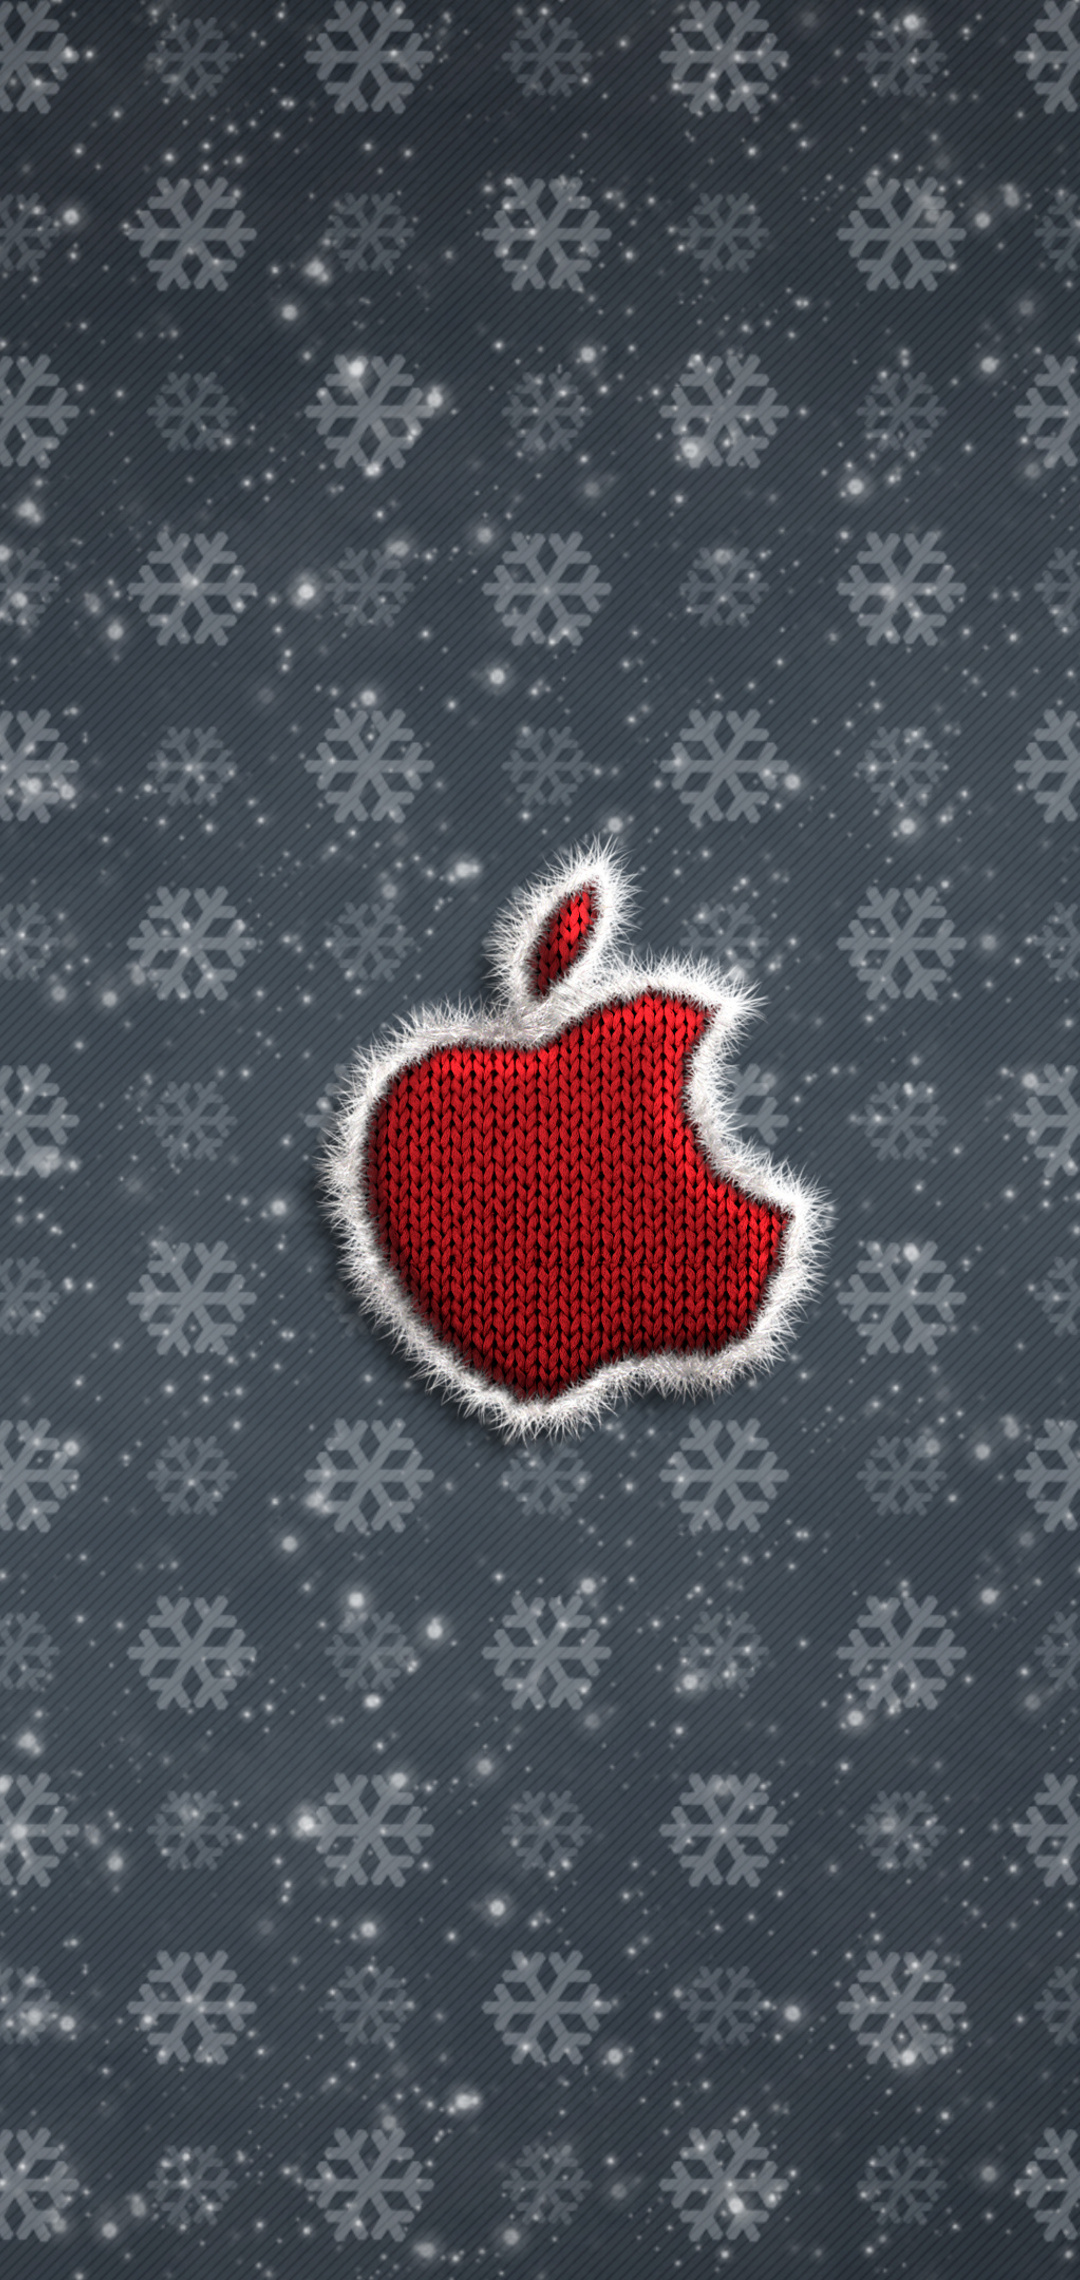 apple-logo-christmas-celebrations-4k-i7.jpg